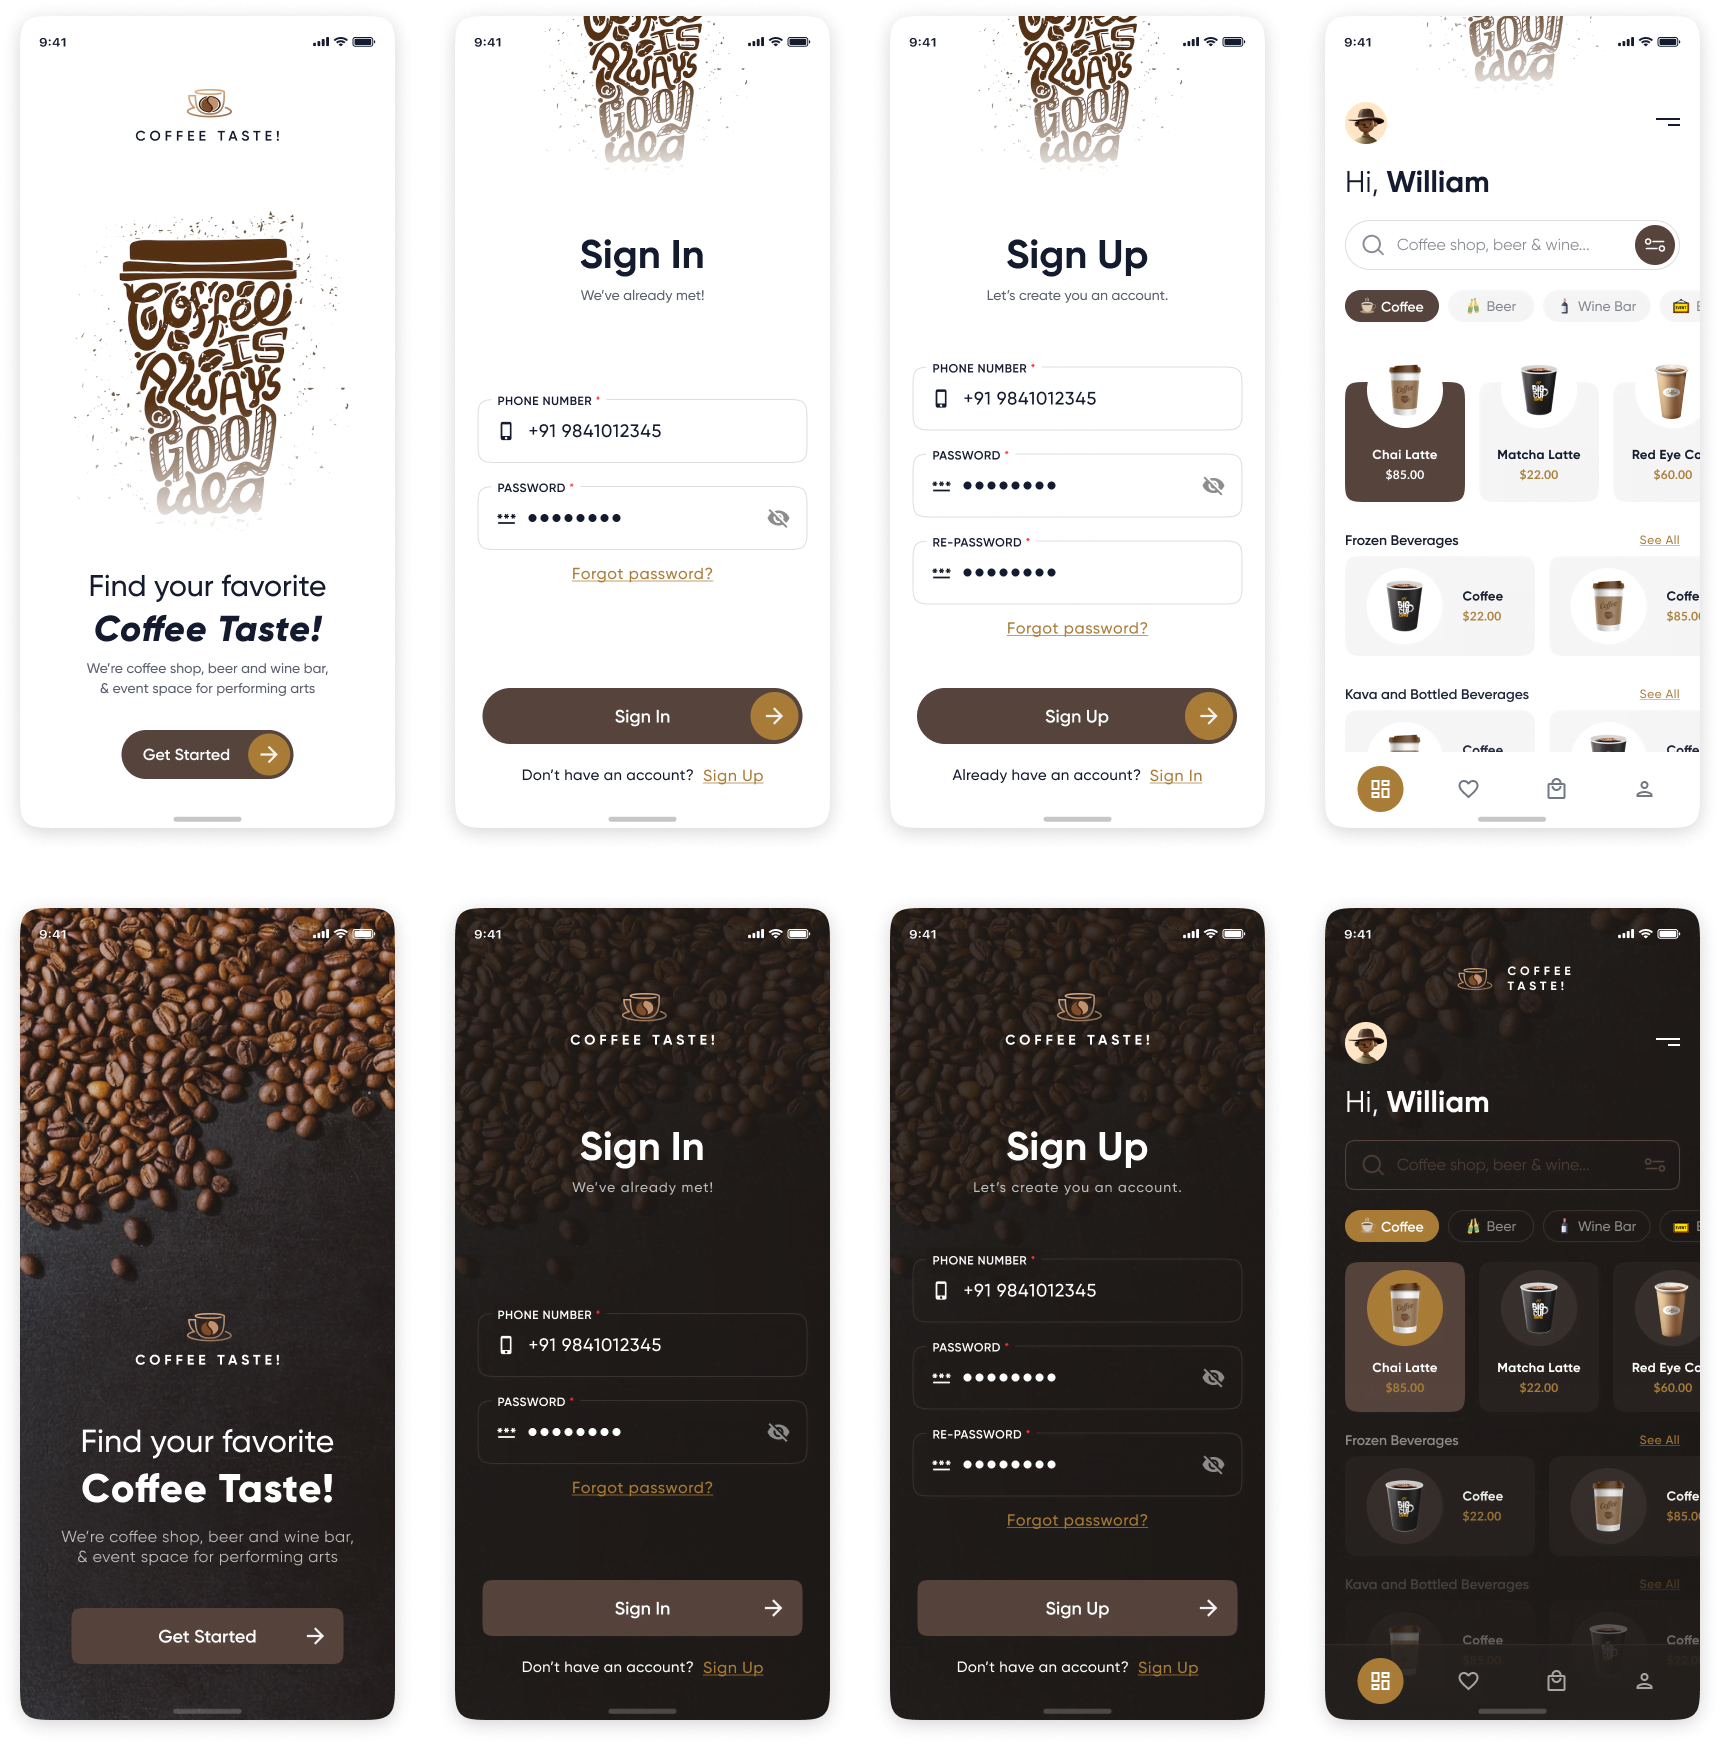 咖啡外卖点餐app UI设计 - 款式丰富的咖啡外卖点餐App UI素材下载 figma格式-UI/UX-到位啦UI